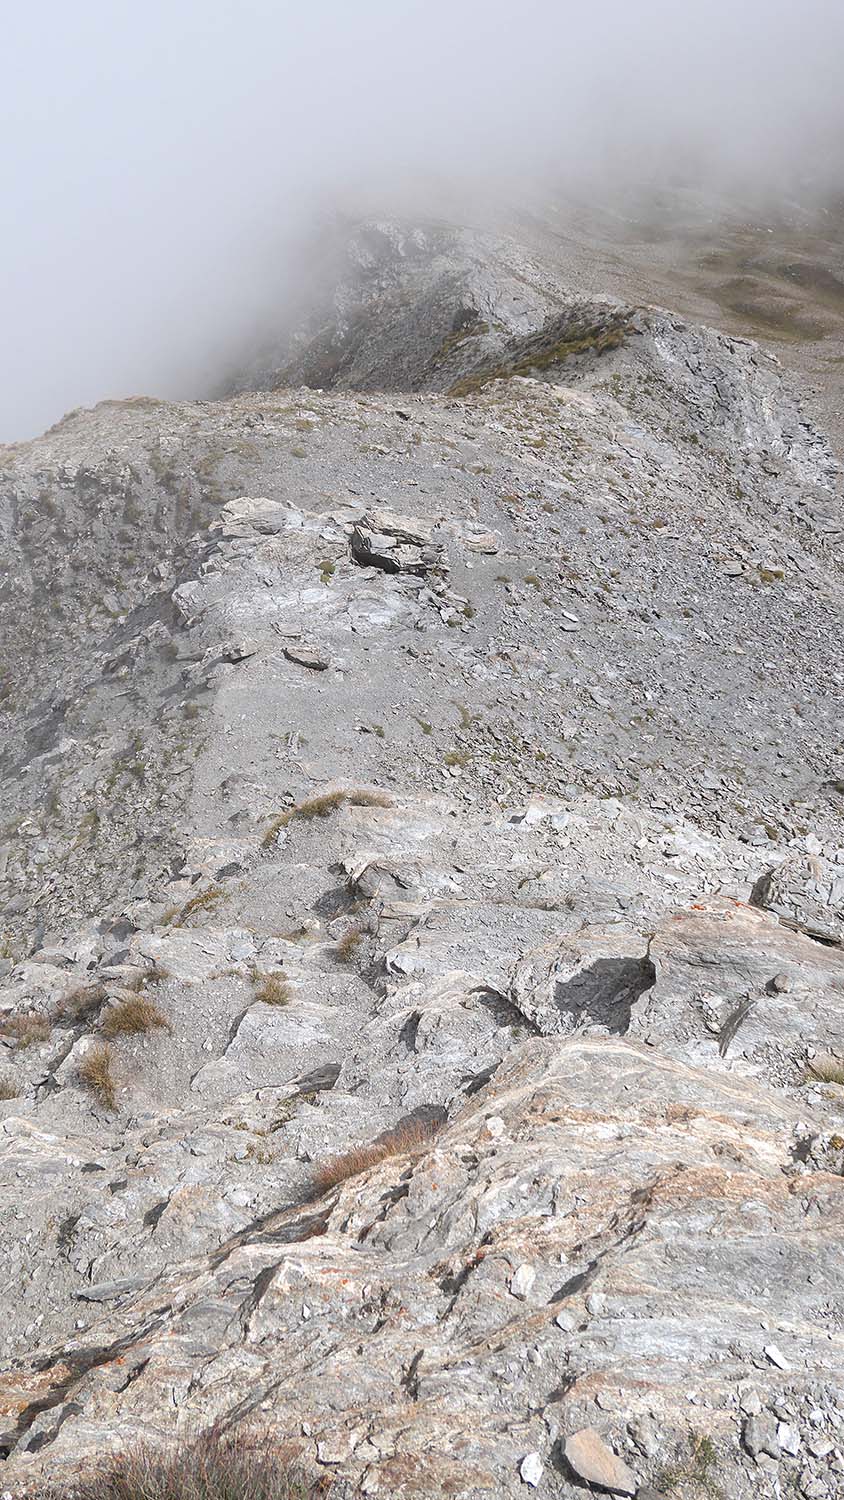 vers 2950 m, un ressaut d'une dizaine de m de hauteur bien galère à désescalader (et même certainement à escalader)